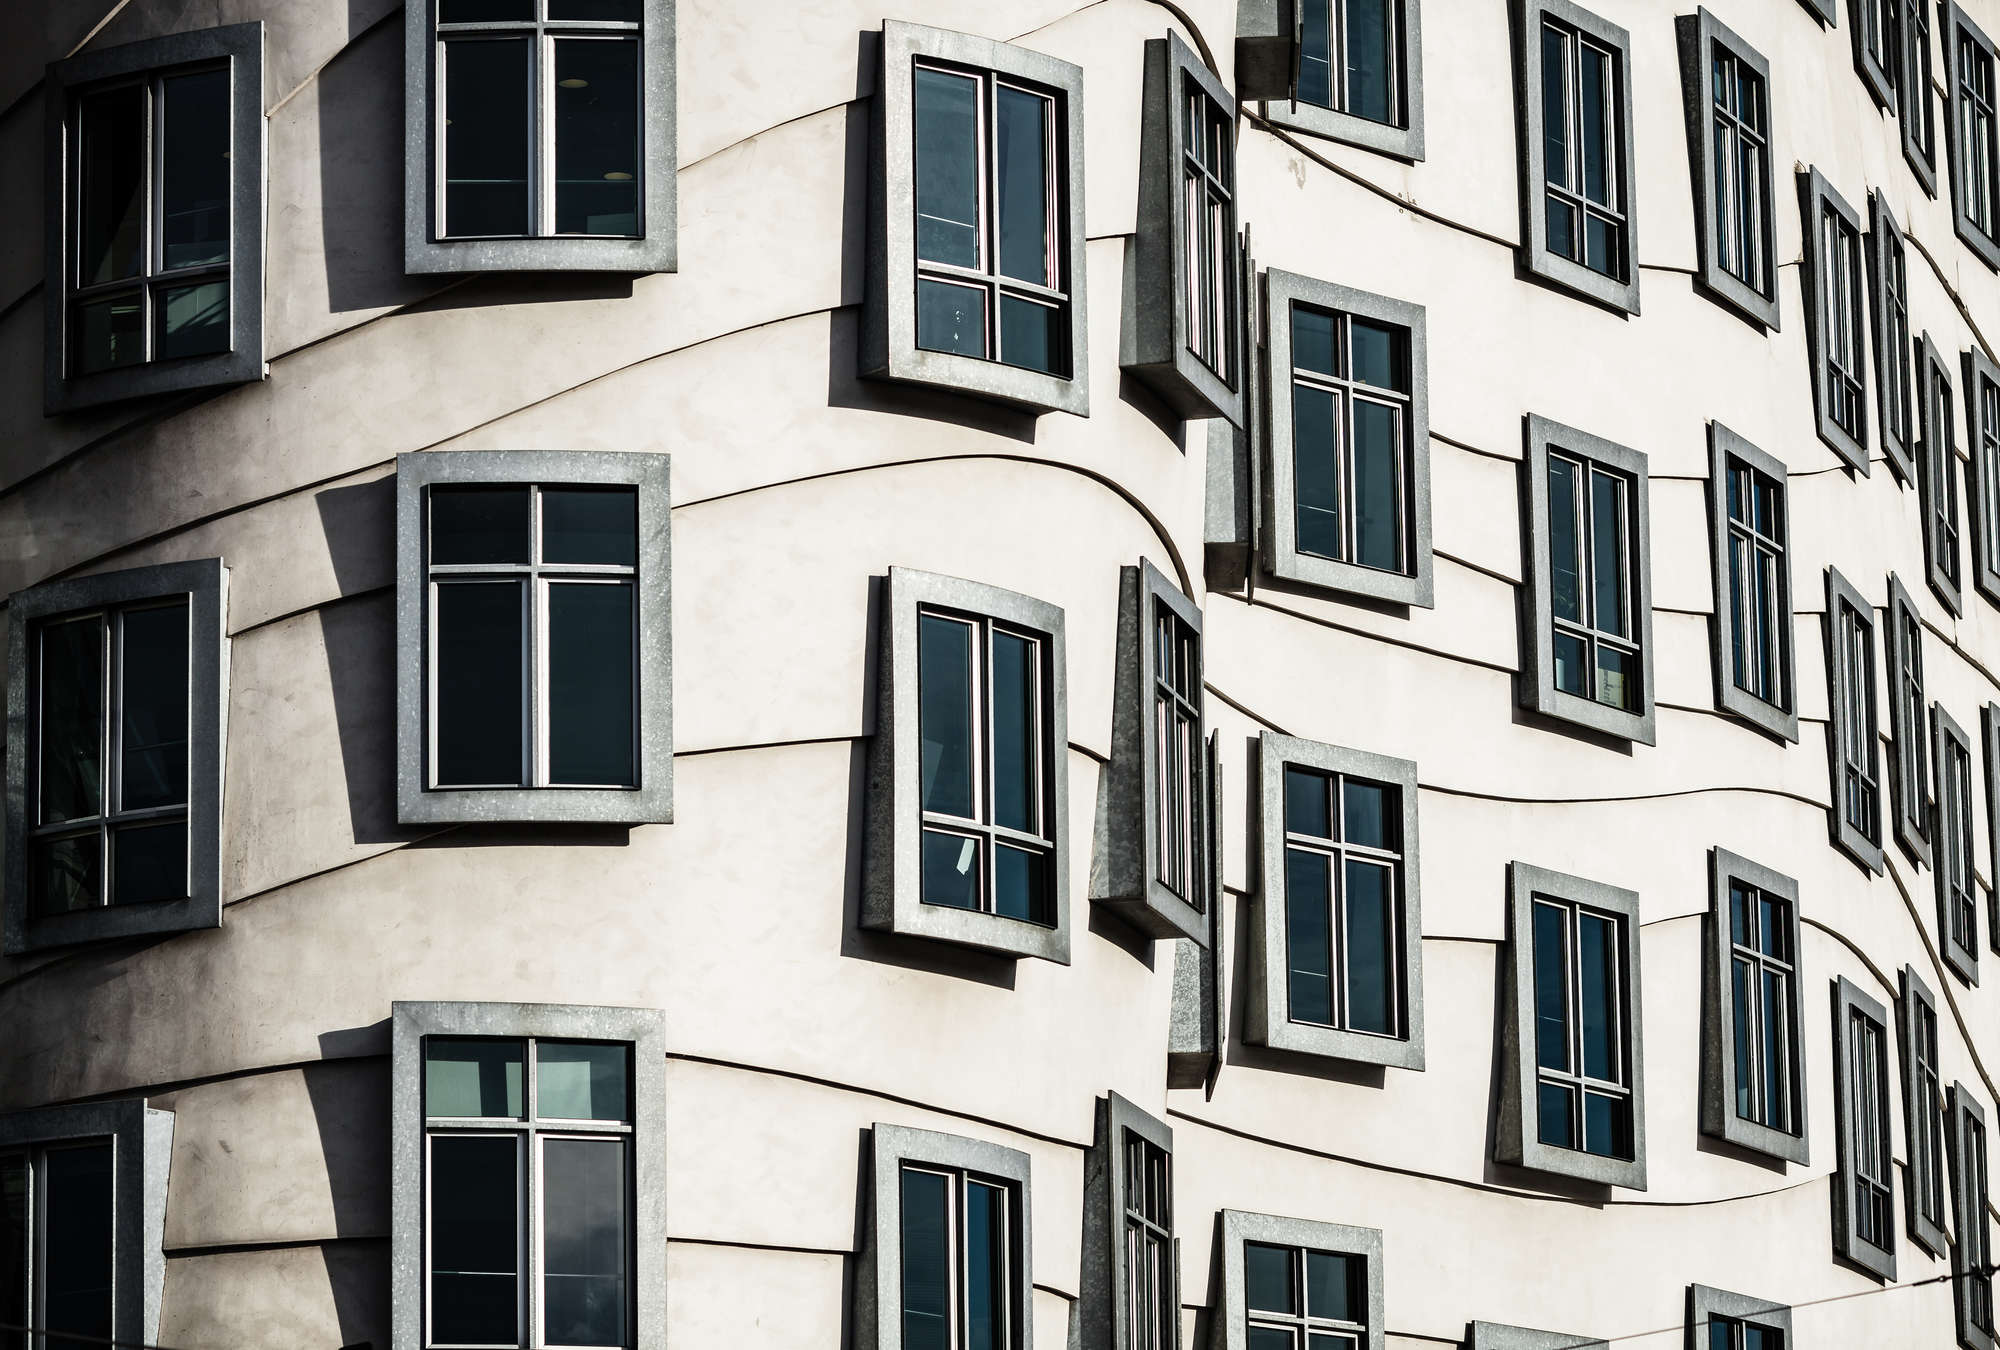             Fototapeten Tanzendendes Haus – Moderne Fenster-Architektur
        